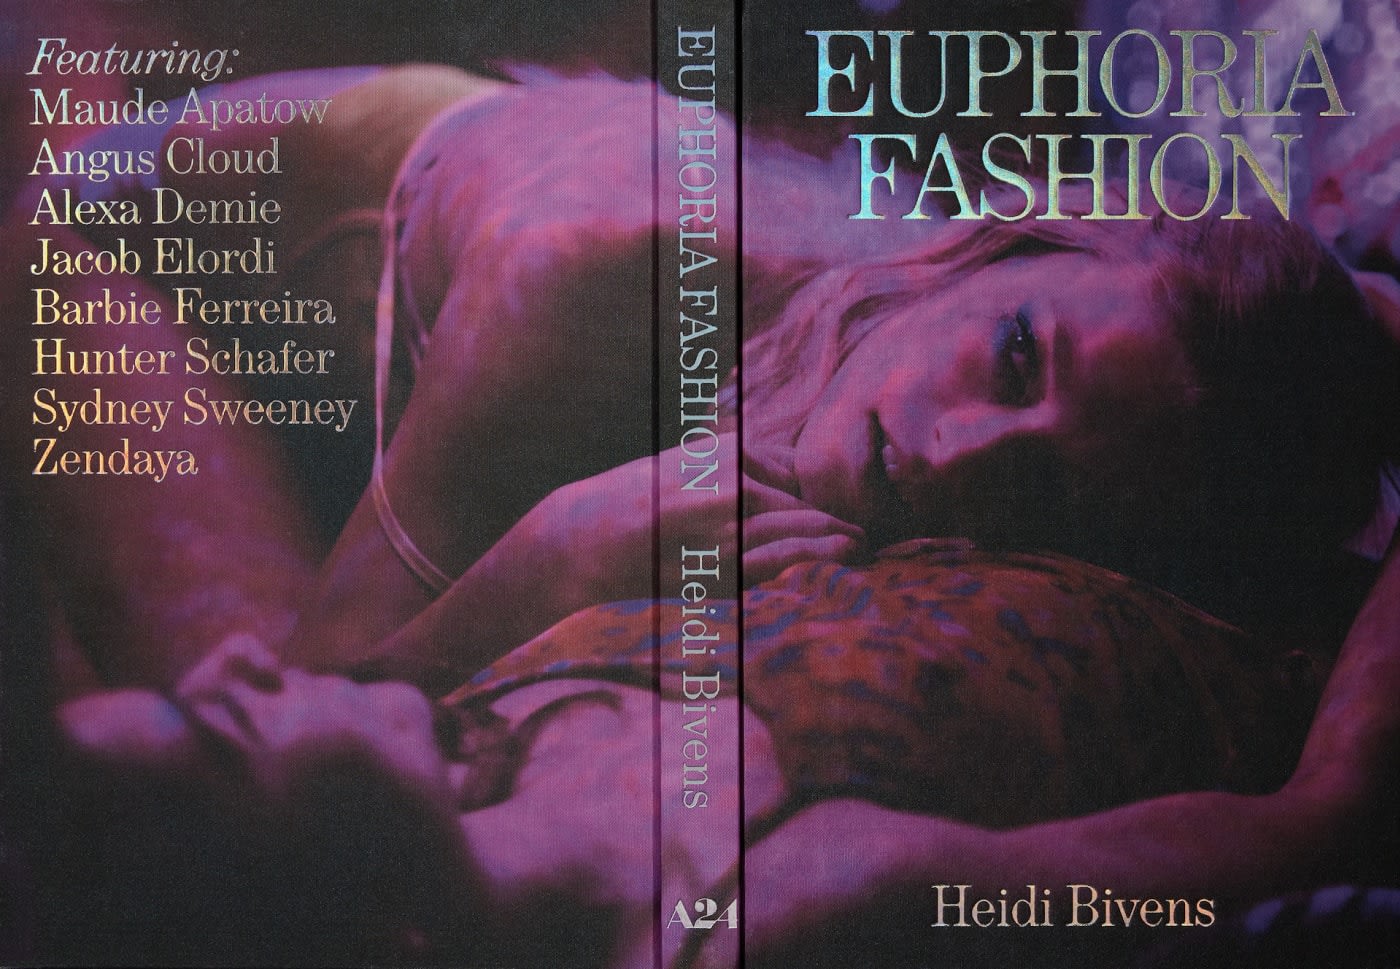 A24 Publishes 'Euphoria Fashion' Book From Costume Designer Heidi Bivens |  Complex